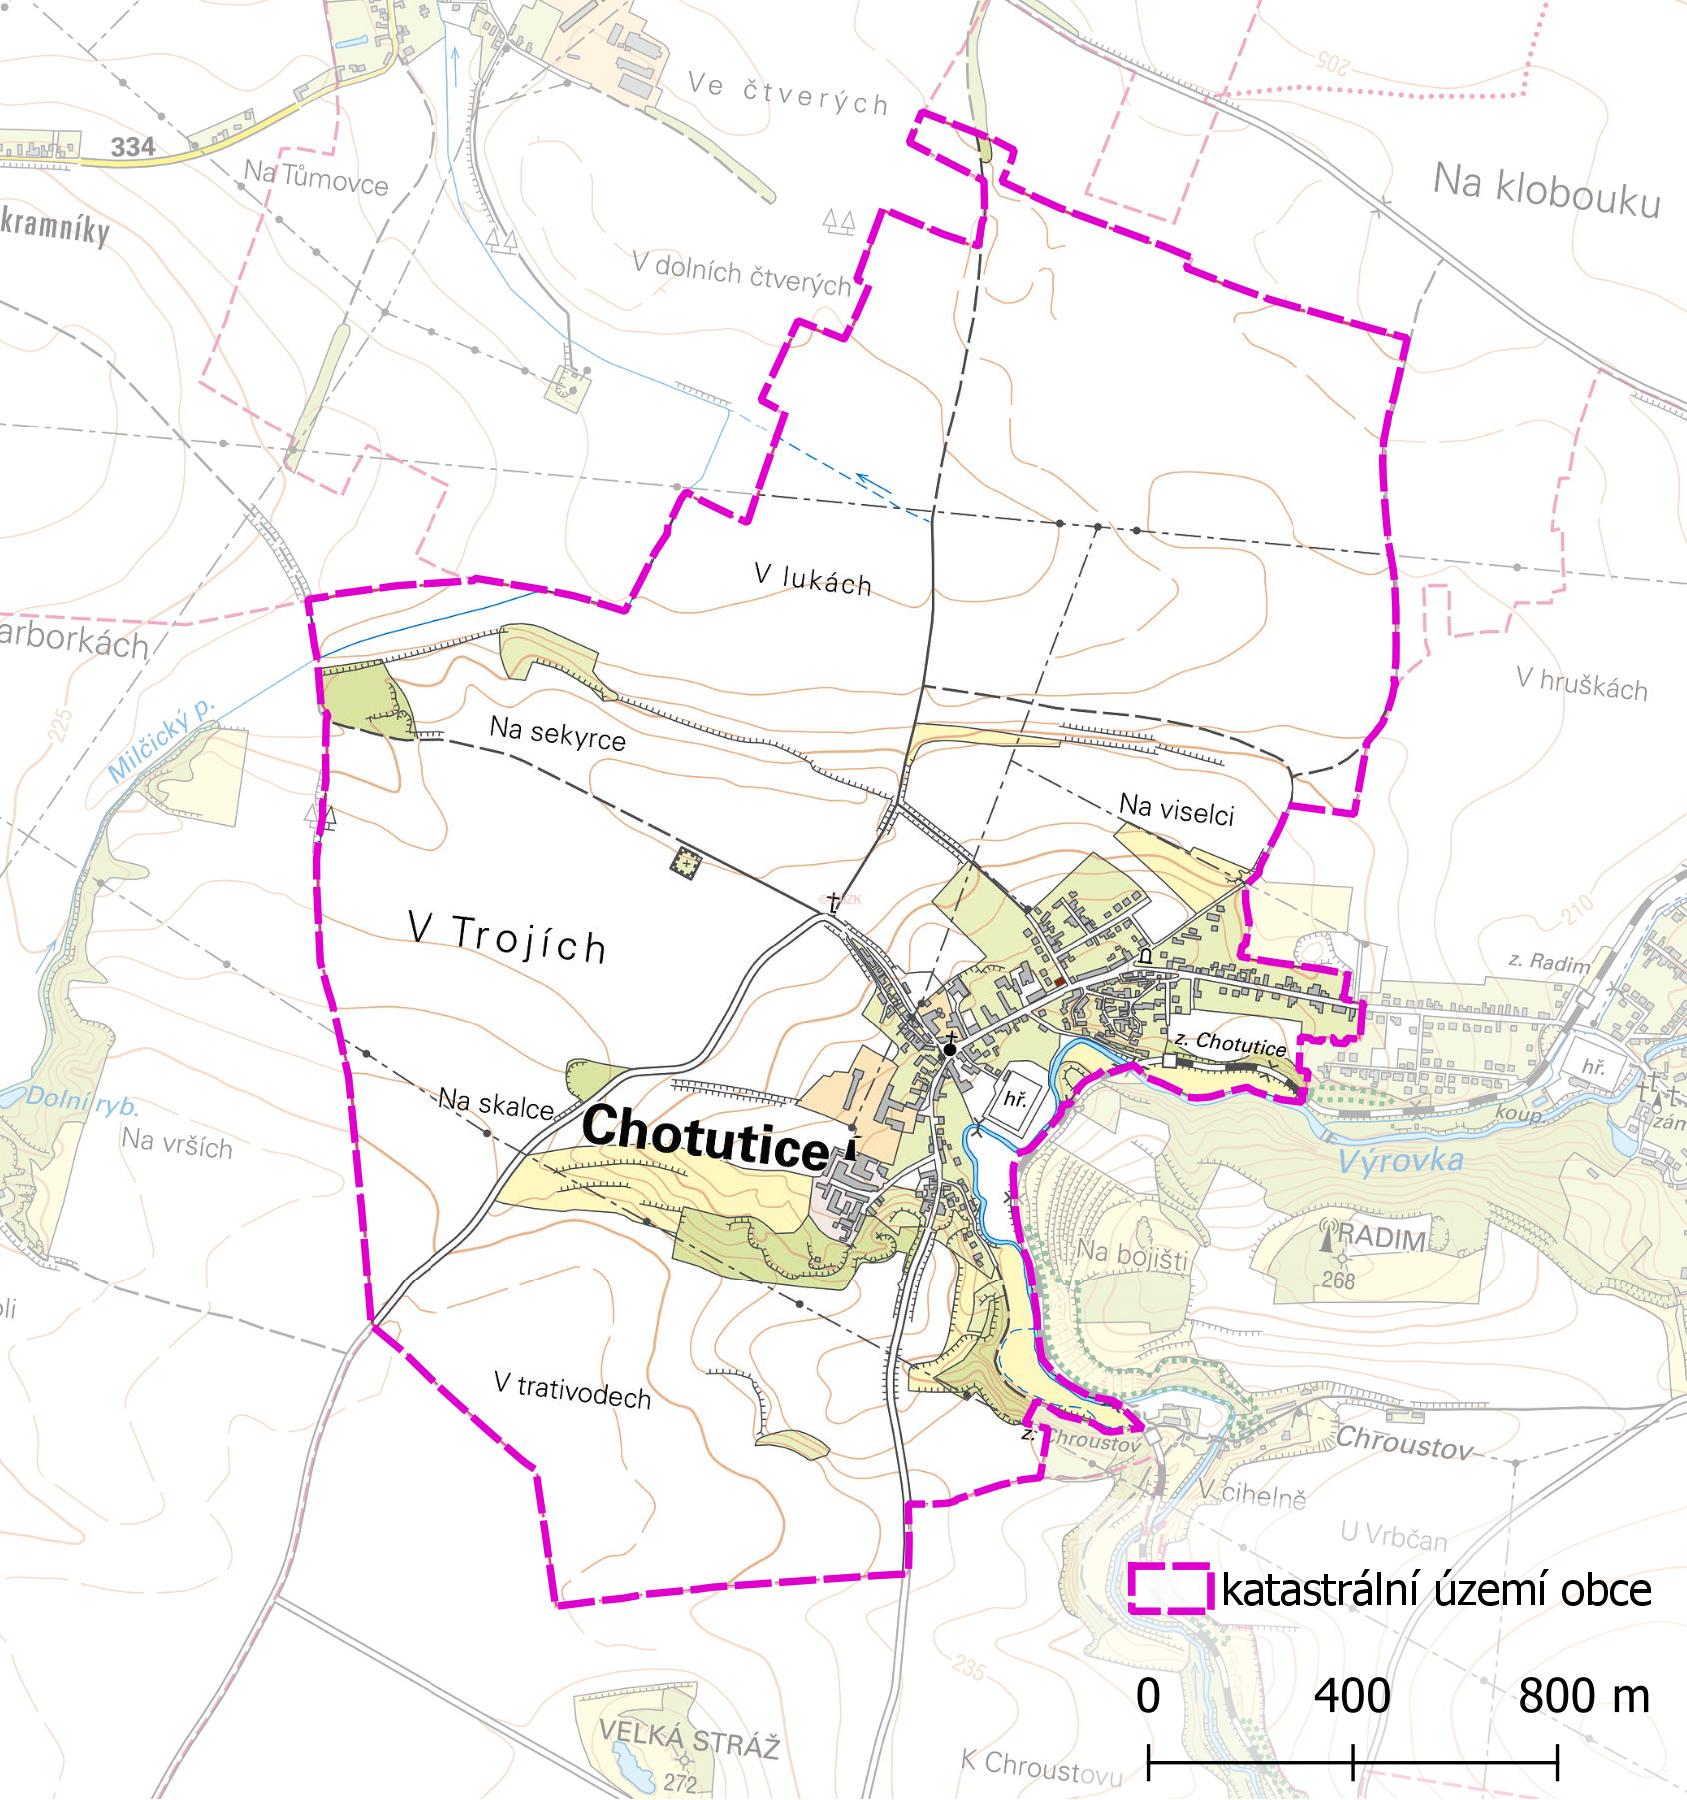 Katastrální území obce Chotutice